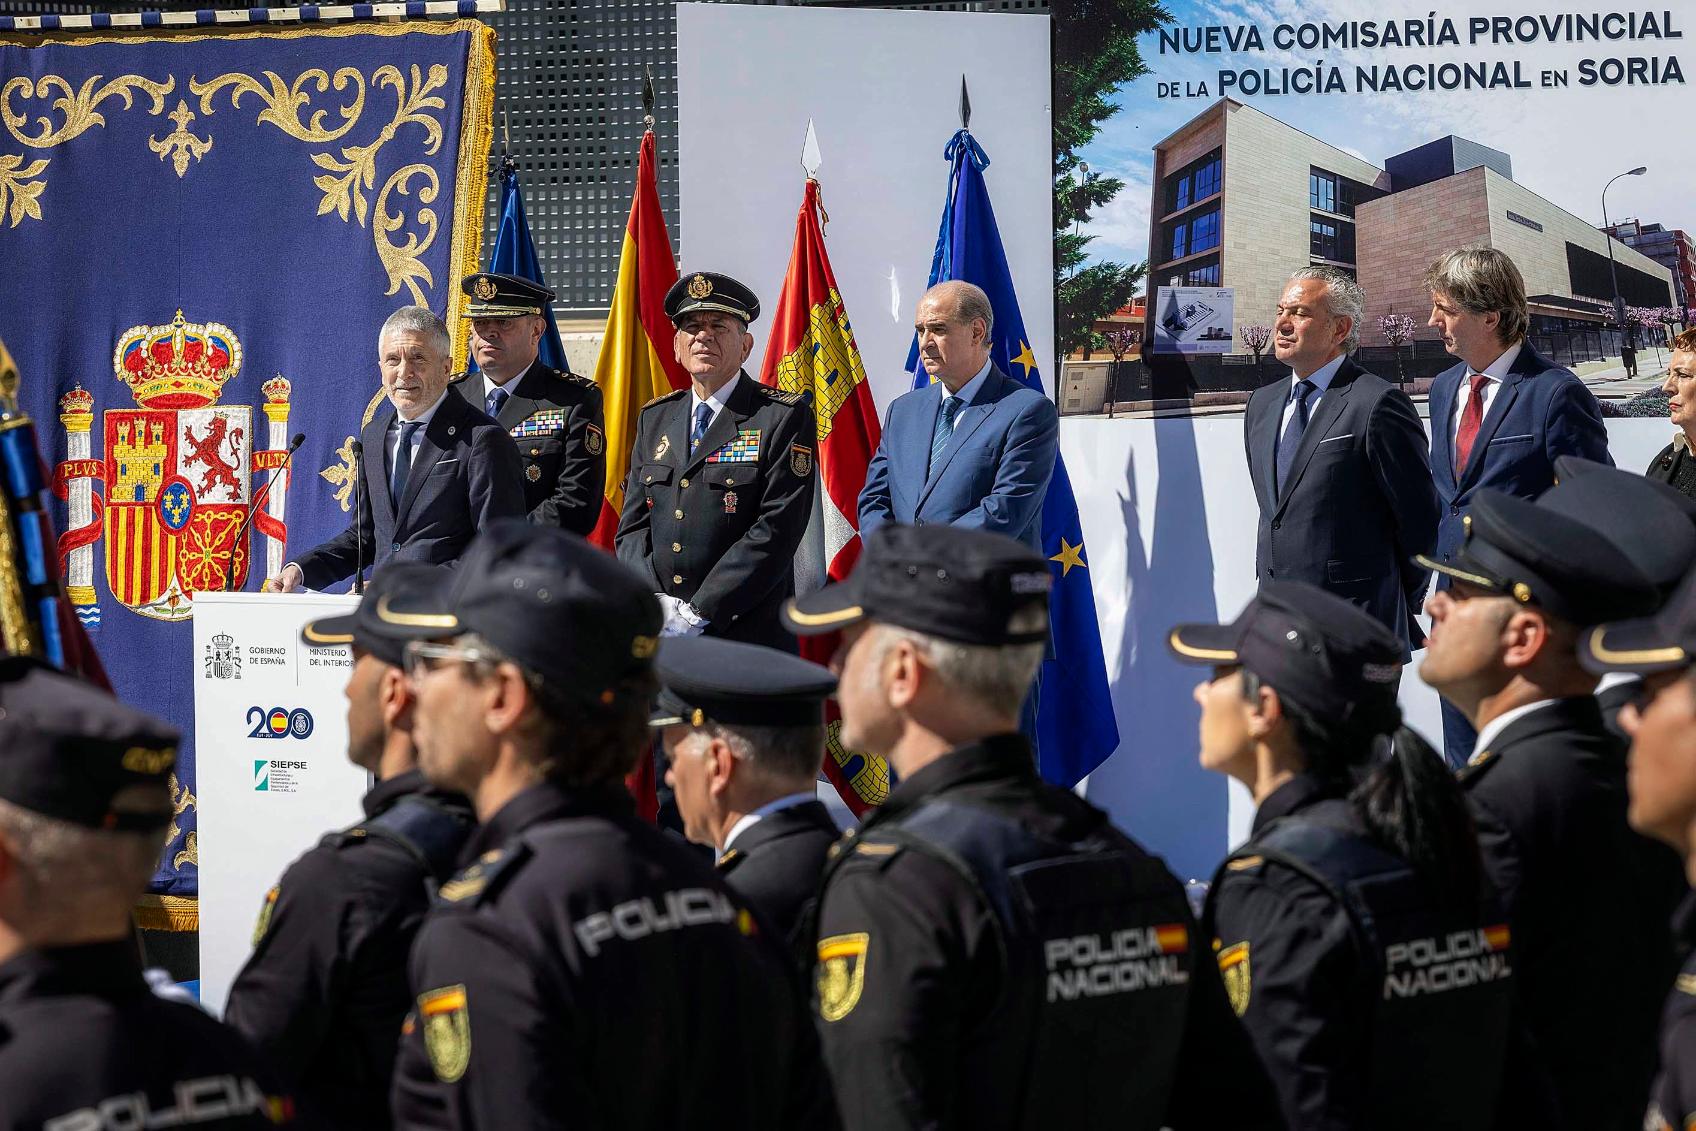 Grande-Marlaska destaca el aumento de efectivos como muestra del compromiso con la seguridad y el progreso en Soria  01